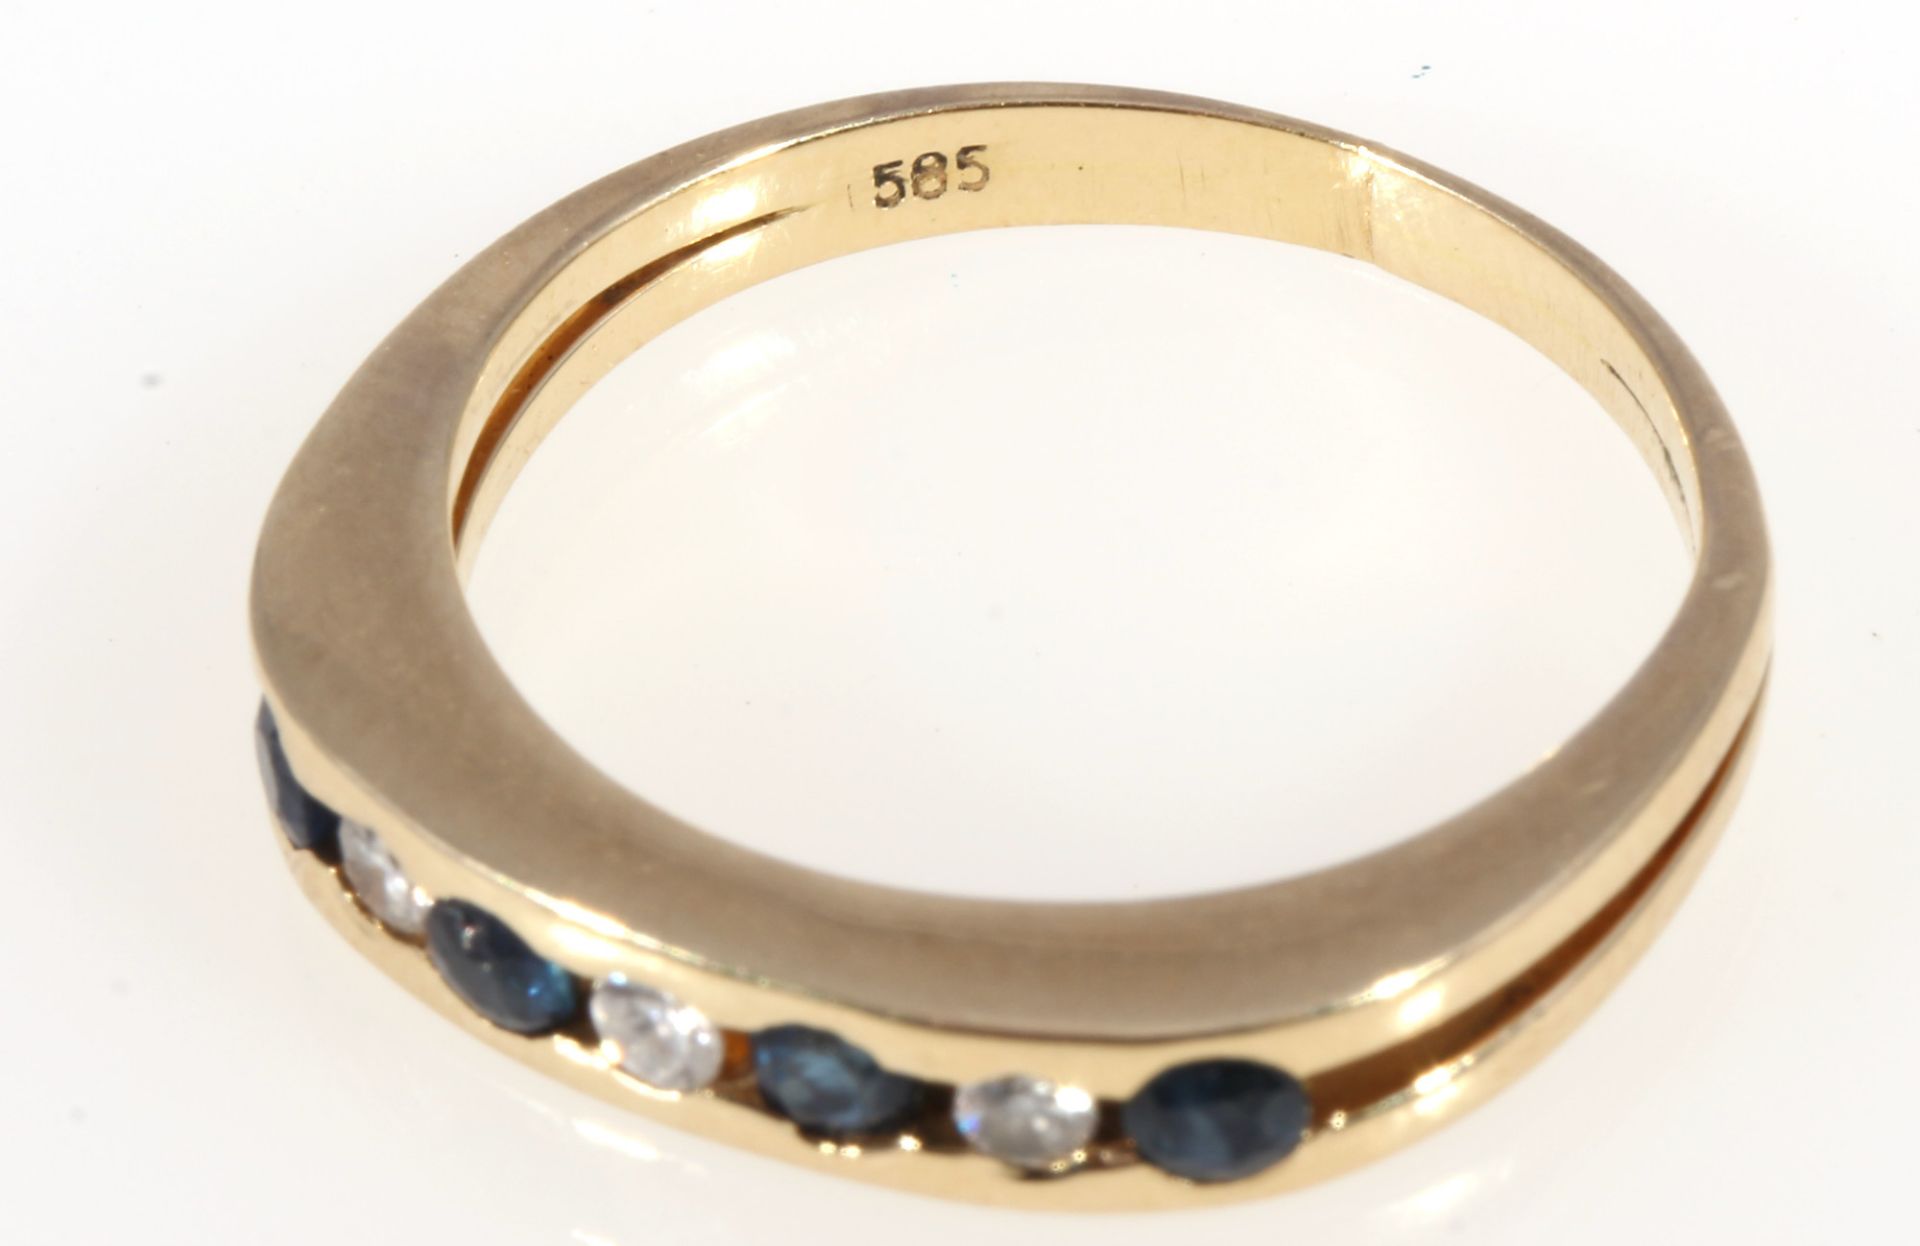 585 gold ring sapphires and diamonds, 14K Gold Ring mit Saphiren und Brillanten, - Image 3 of 3